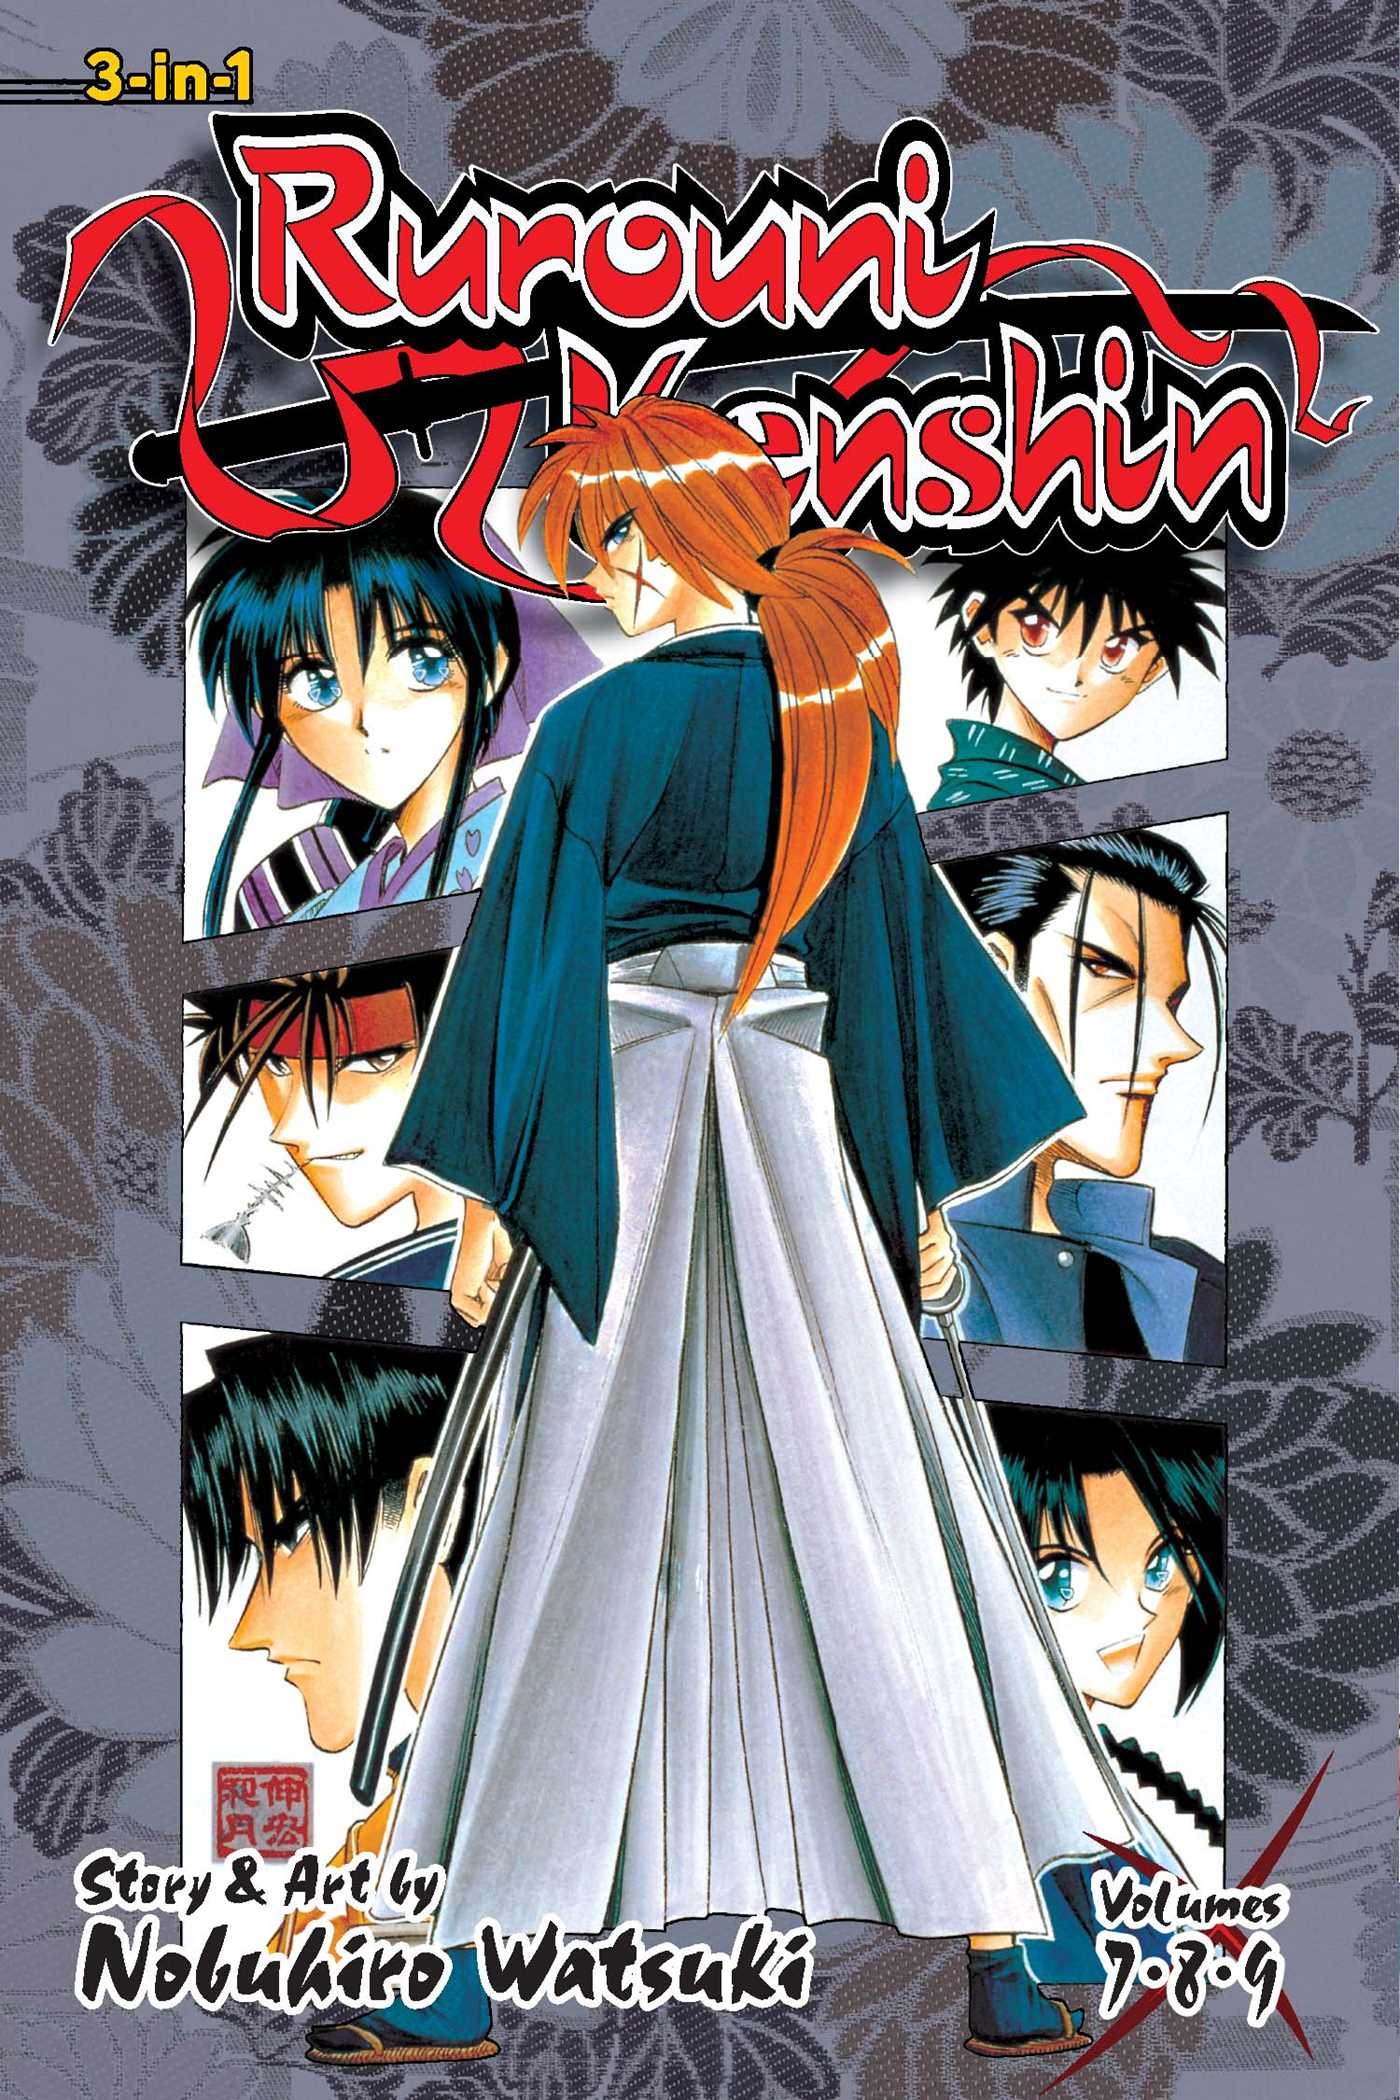 Rurouni Kenshin (3-in-1 Edition) - Volume 3 | Nobuhiro Watsuki